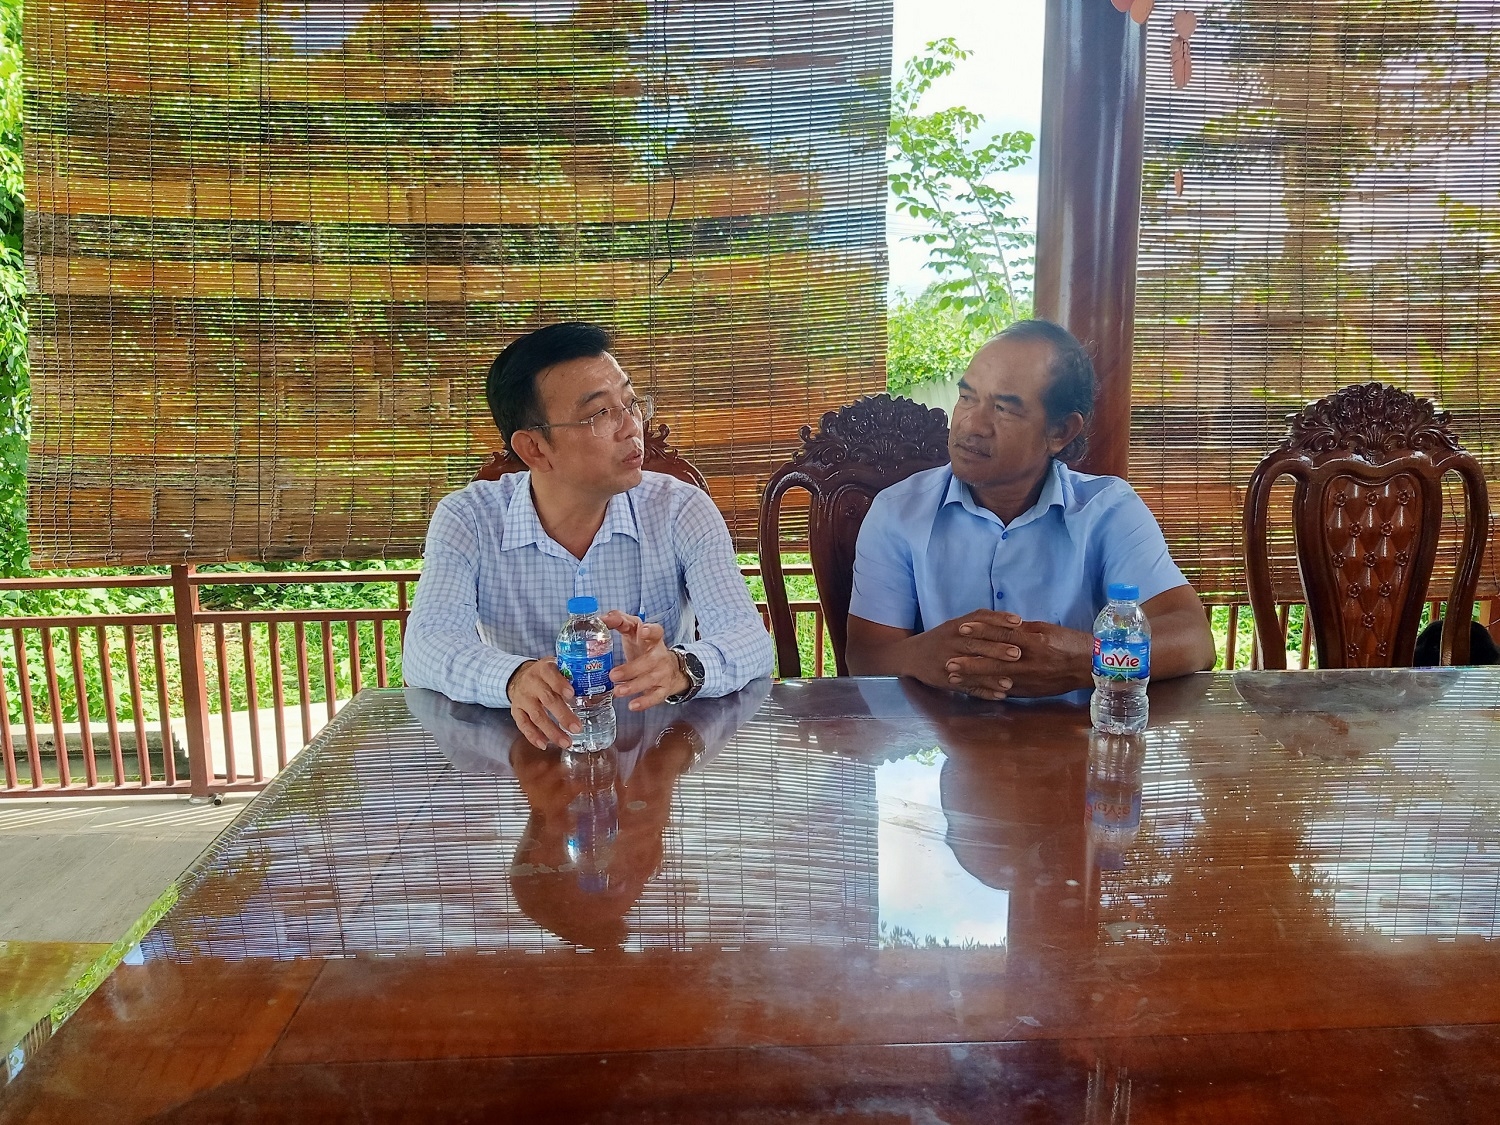 Ông Phạm Ngọc Tài, Phó Chủ tịch UBND Thị trấn Ngãi Giao, huyện Châu Đức (trái) đang trao đổi với ông Đào Văn Giả, Người có uy tín tại khu phố Vinh Thanh (trái) về những kiến nghị, nhu cầu của bà con đồng bào DTTS 